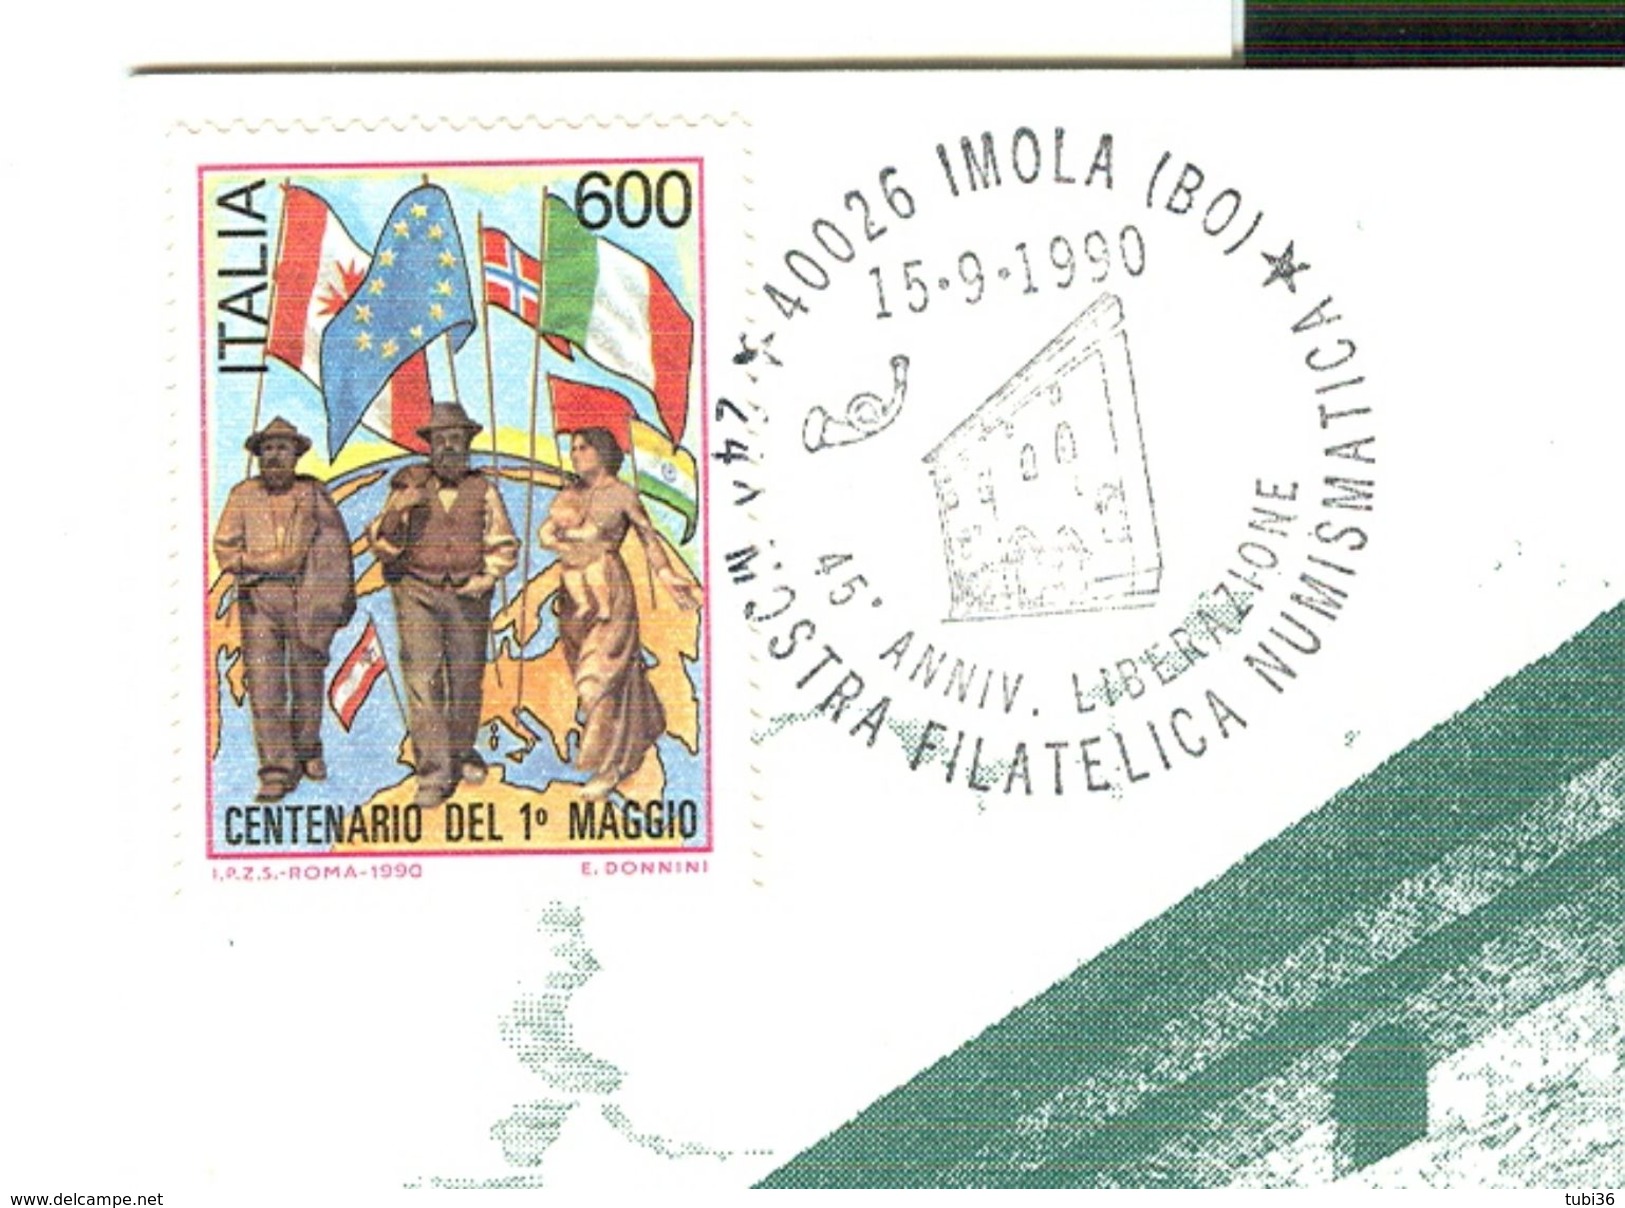 IMOLA (BOLOGNA) "45° ANNIVERSARIO LIBERAZIONE",1990,ANNULLO SPECIALE FIGURATO SU CARTOLINA DEDICATA, - Philatelic Exhibitions